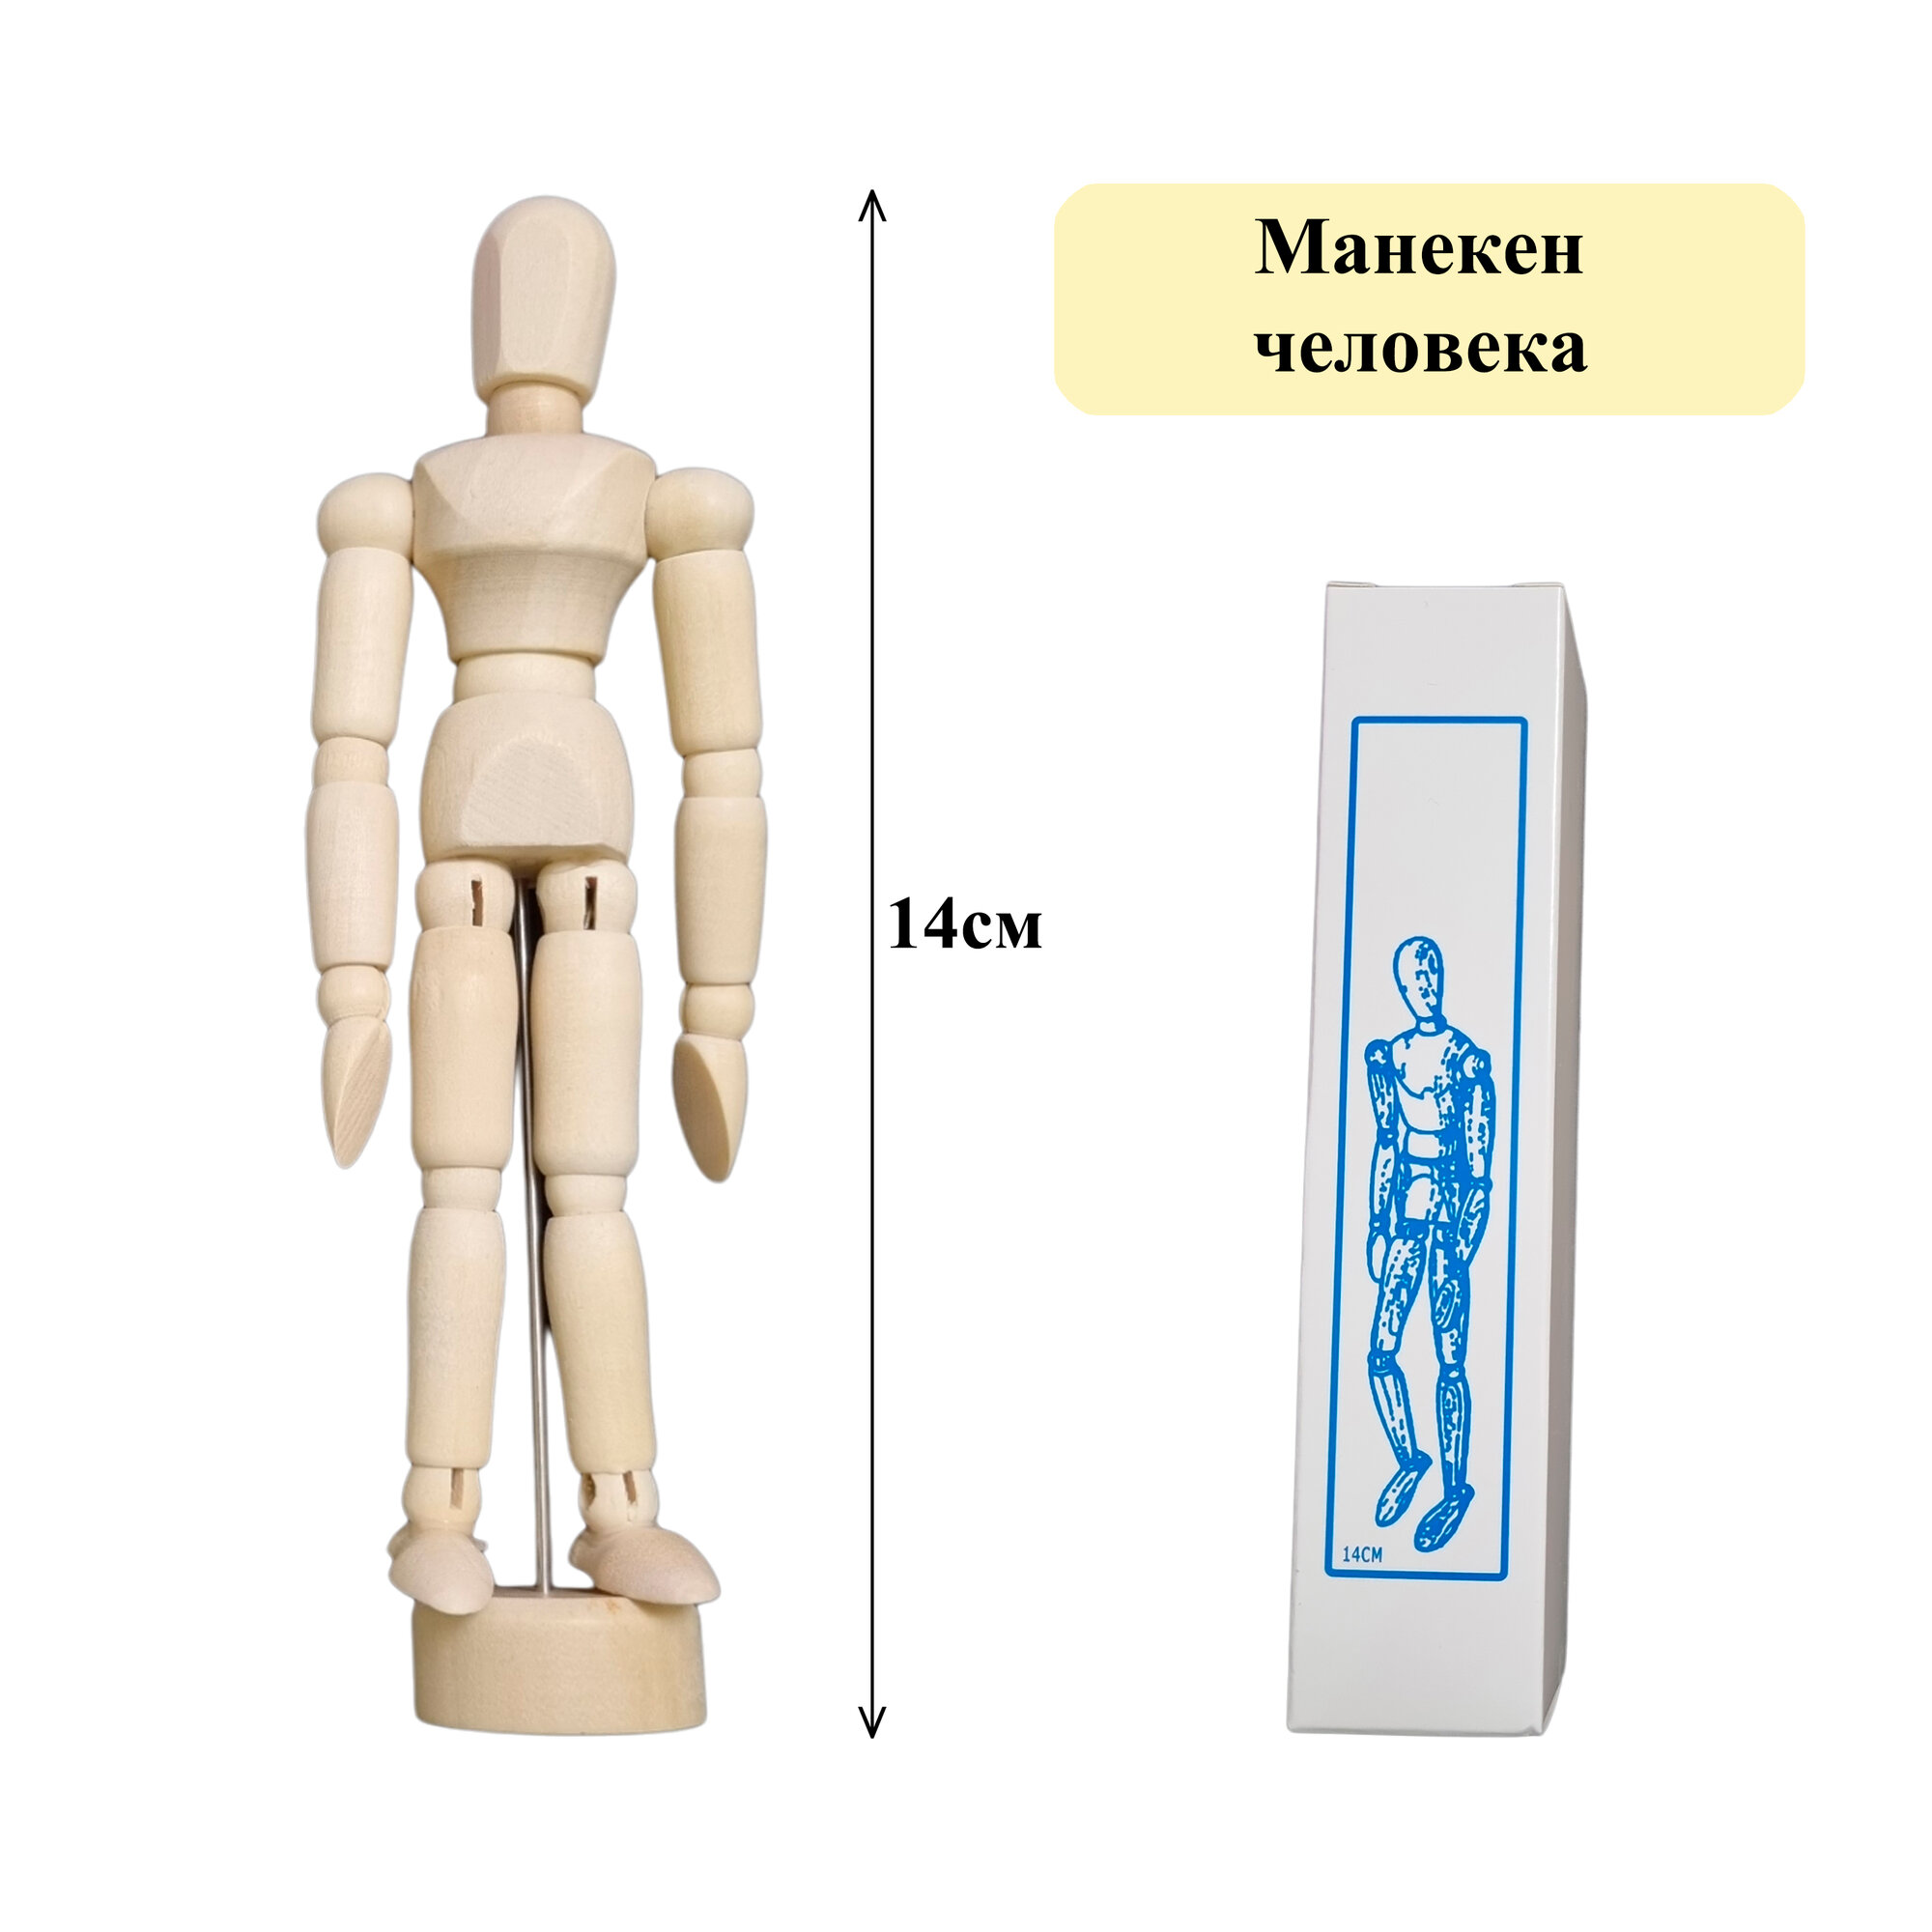 Художественный деревянный манекен, модель "Человек", высота 14 см